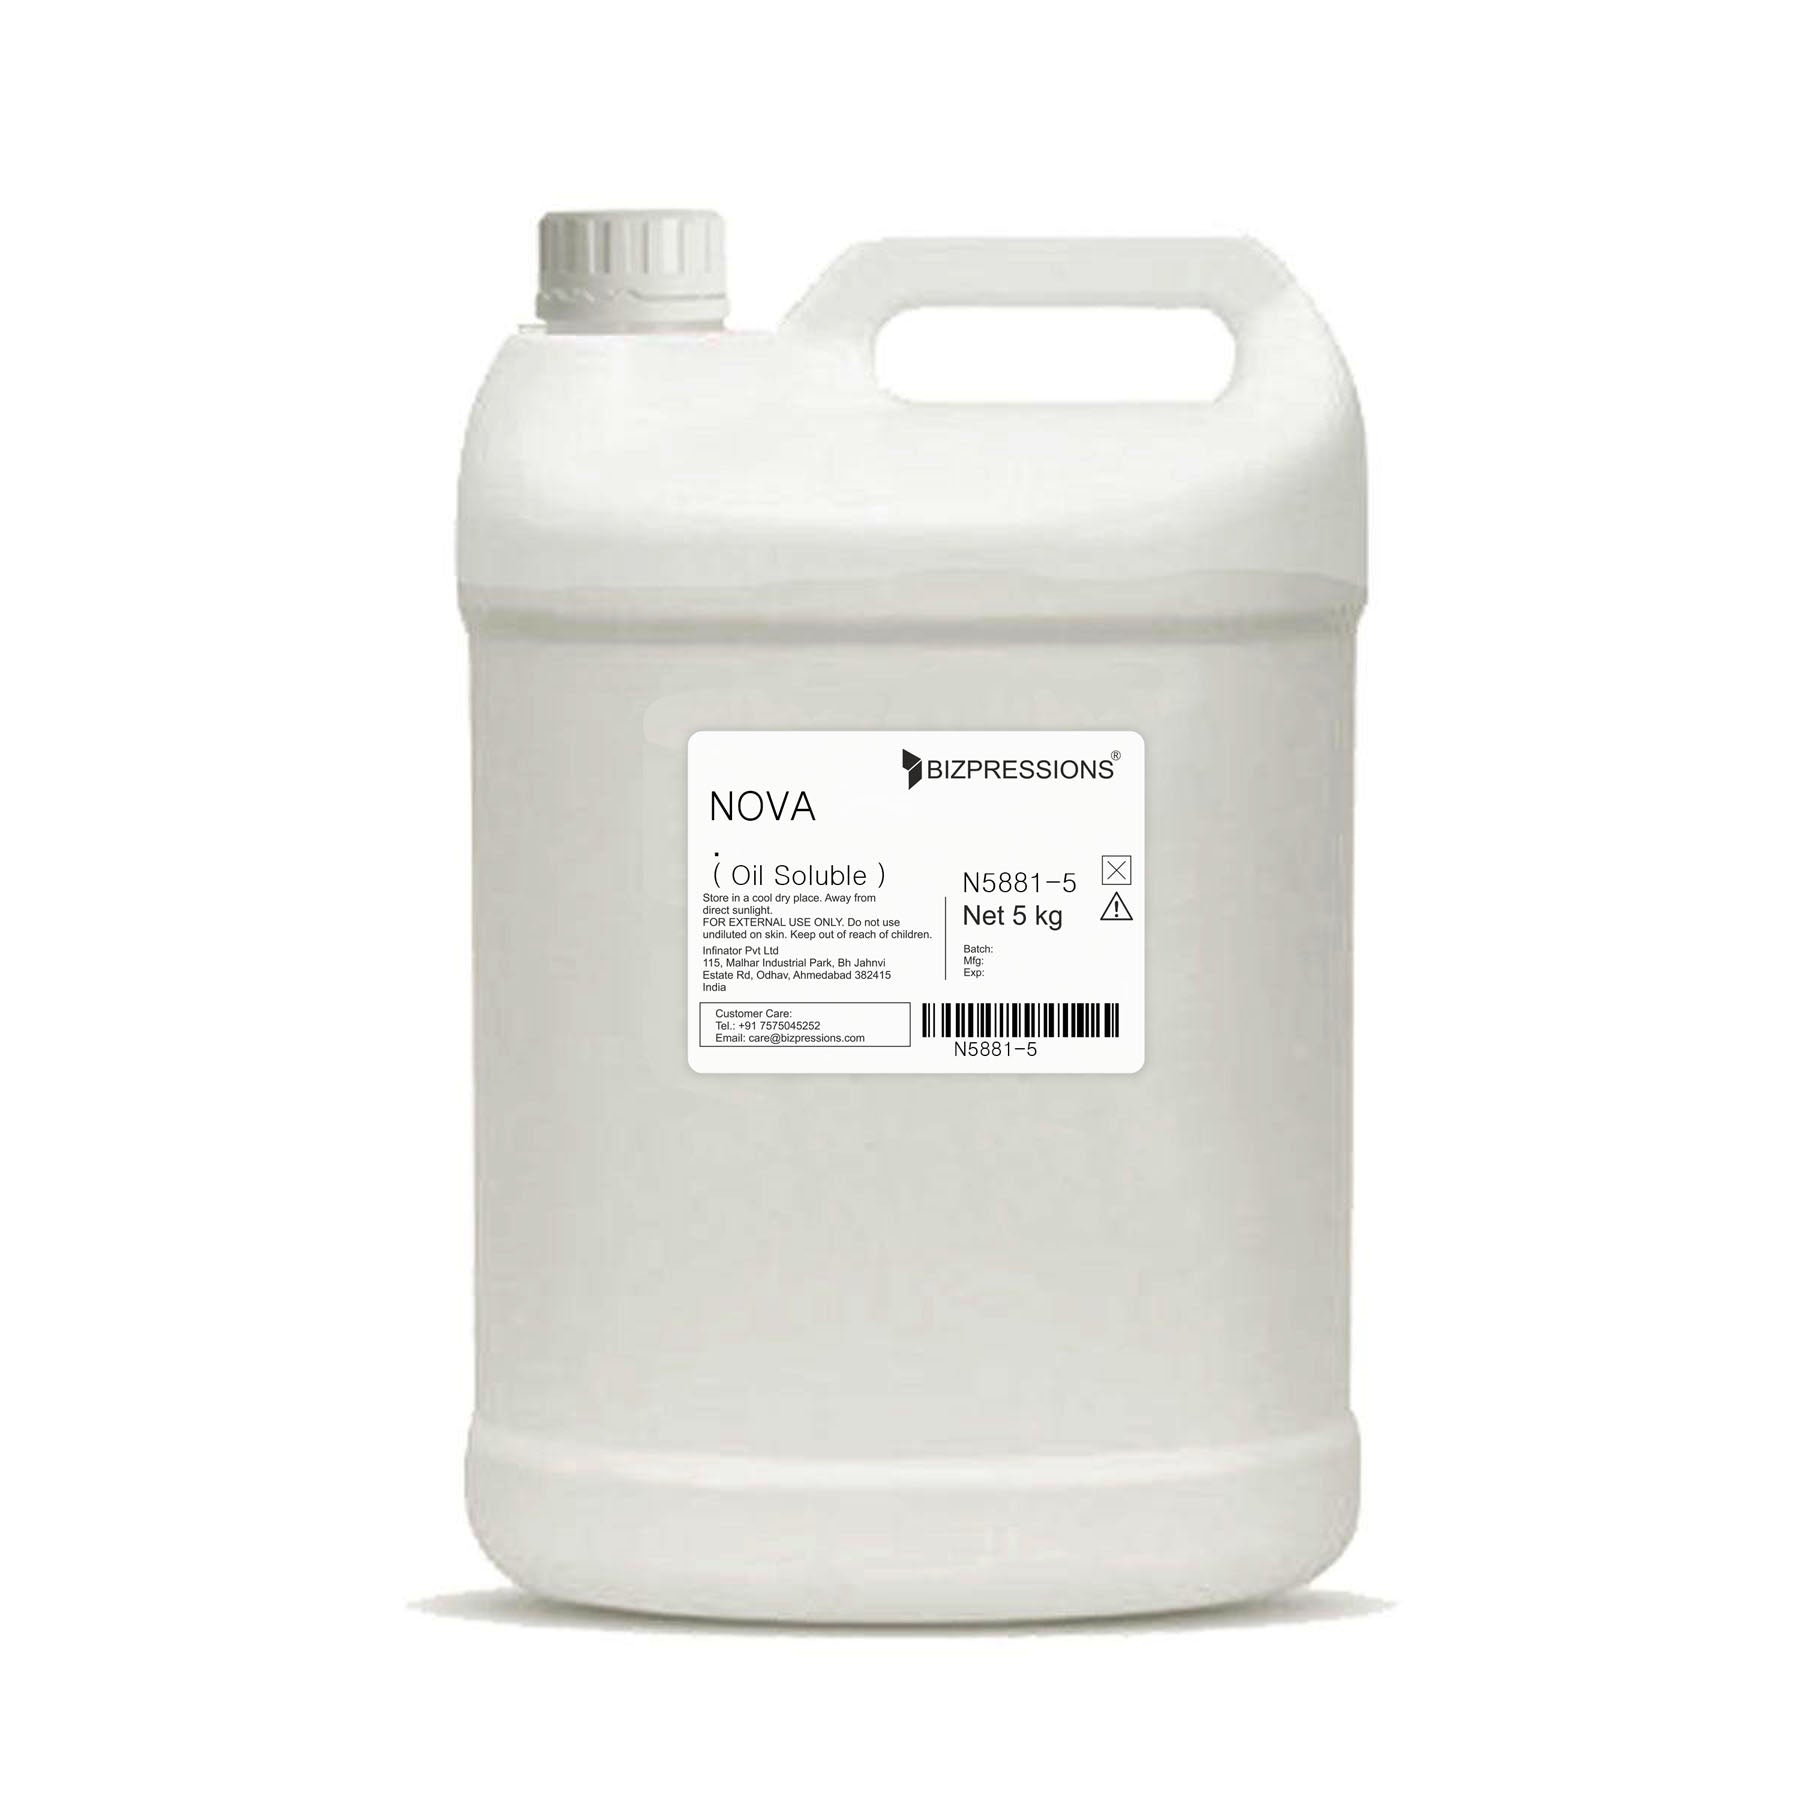 NOVA - Fragrance ( Oil Soluble ) - 5 kg